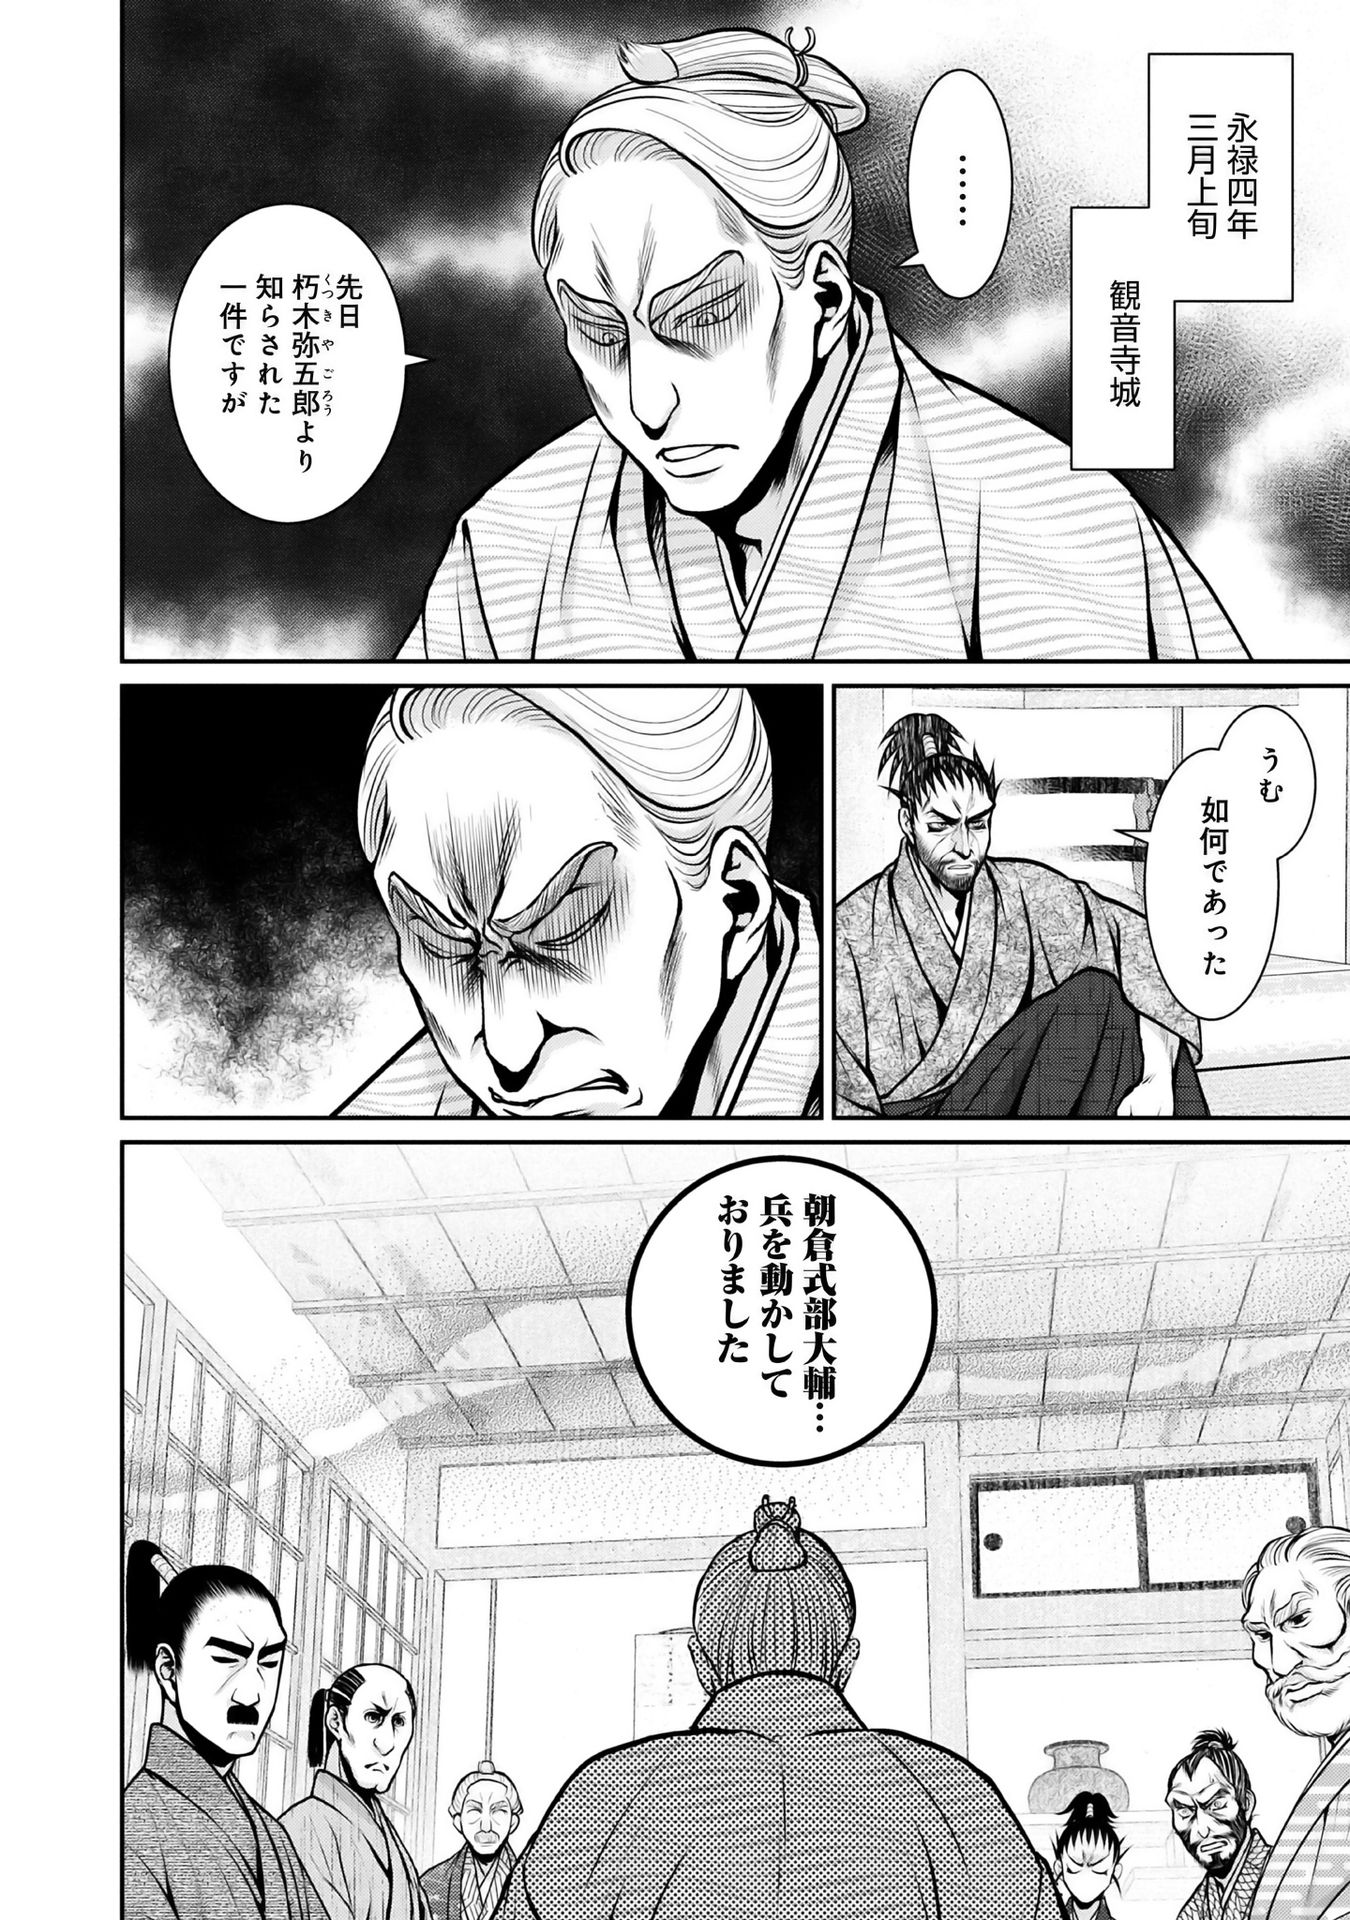 Afumi no Umi – Minamo ga Yureru Toki - Chapter 11 - Page 4